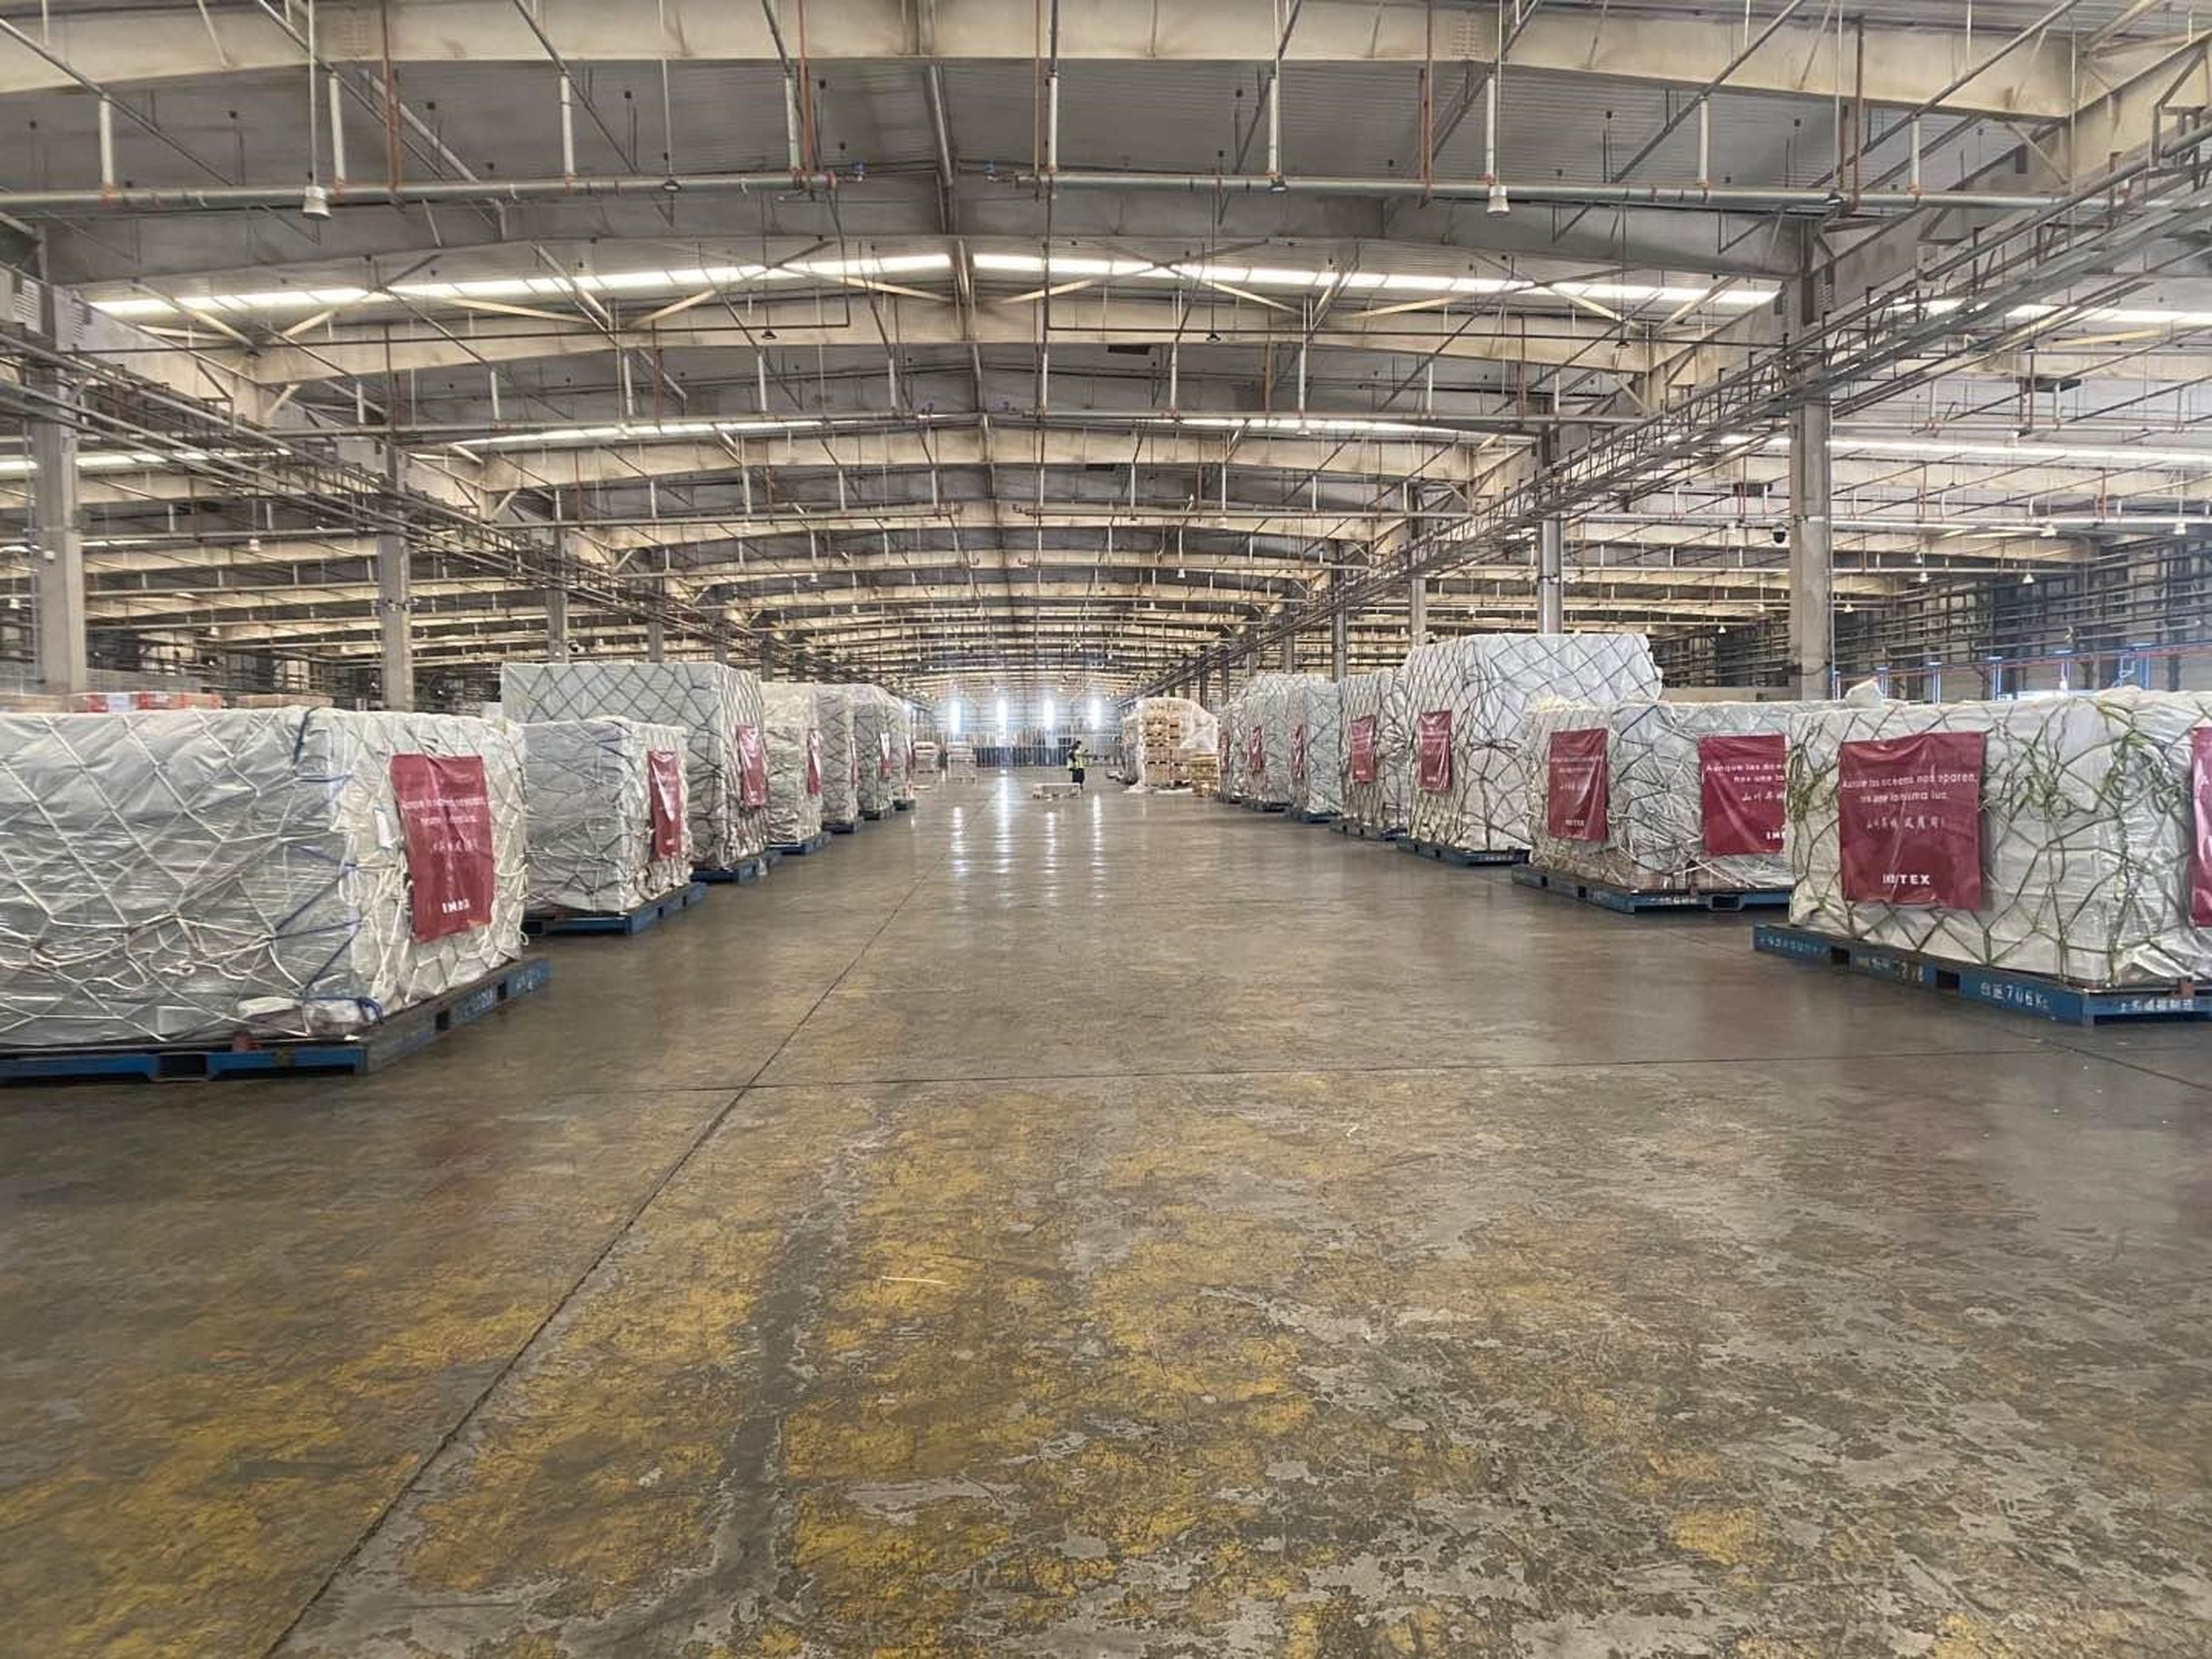 Paquetes en un carguero preparados para ser enviados y en los que se incluyen las 300.000 mascarillas donadas por Inditex.